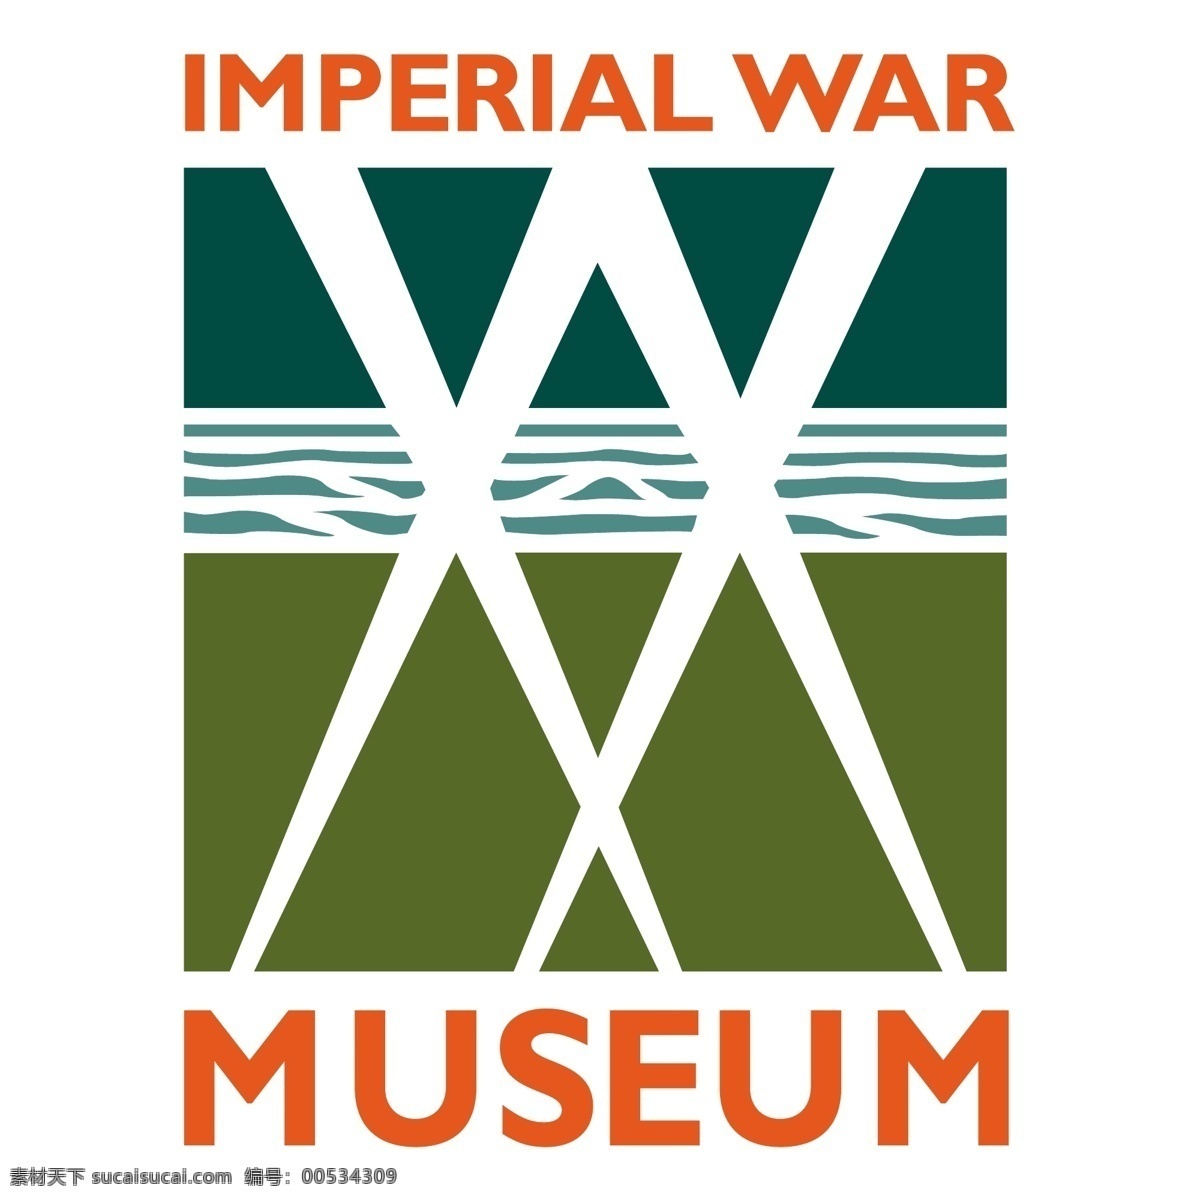 博物馆 战争 自由 帝国 帝国的战争 战争博物馆 向量 矢量 故宫博物院 故宫 图形 建筑家居